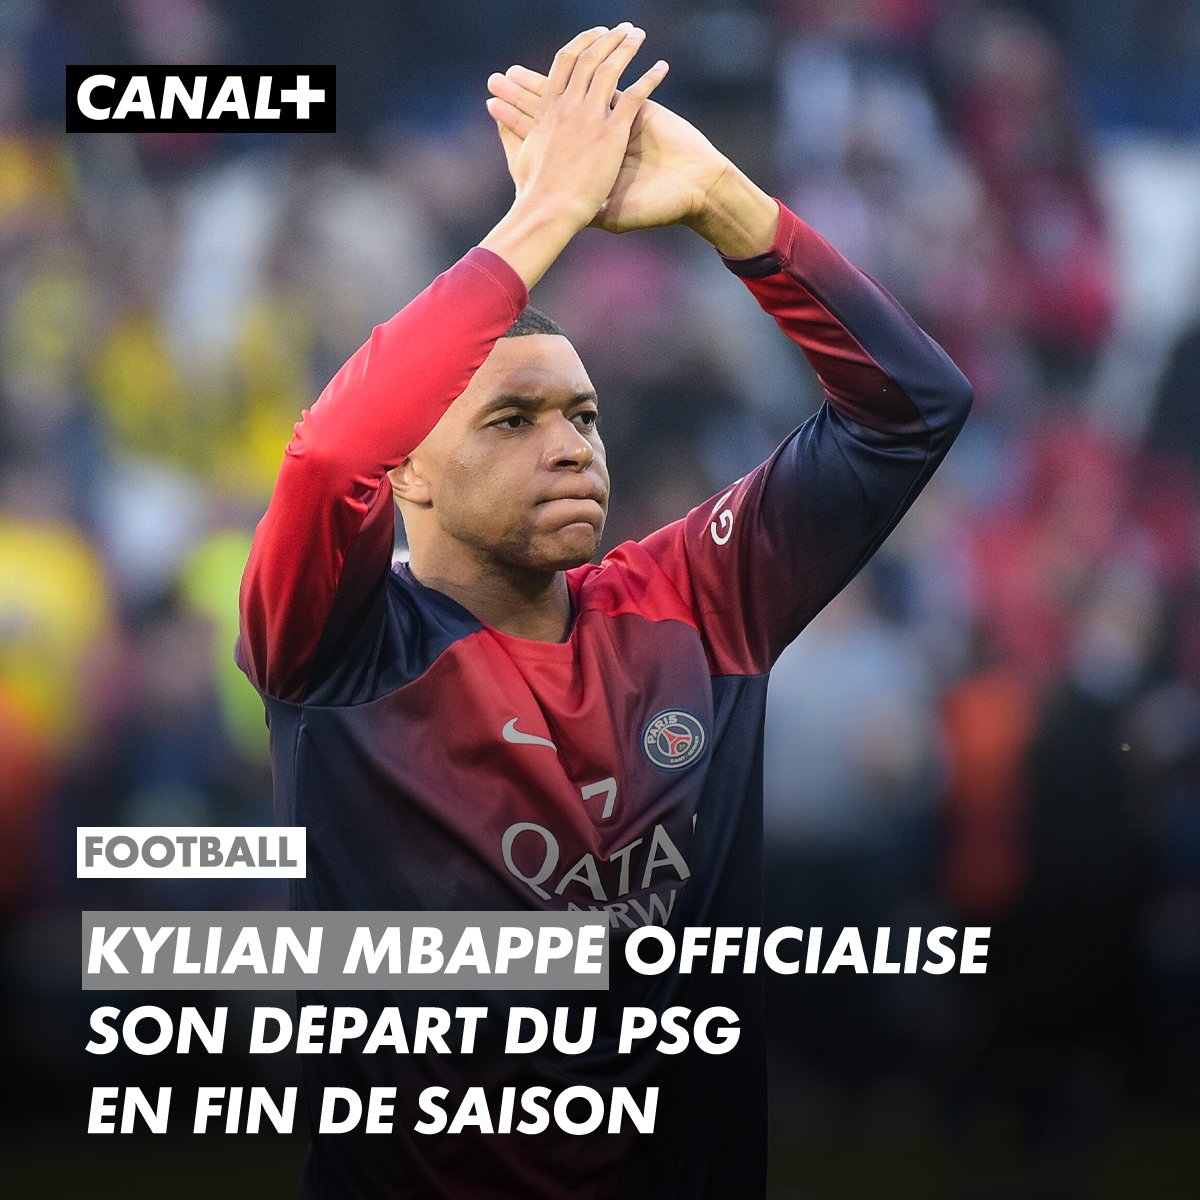 Kylian Mbappé 🗣 : 'C'est ma dernière année au Paris Saint-Germain'. C'est à travers une vidéo diffusée dans son compte Instagram que l'attaquant français à rendu officielle sa décision de quitter le PSG en fin saison. Il disputera son dernier match au Parc ce dimanche.